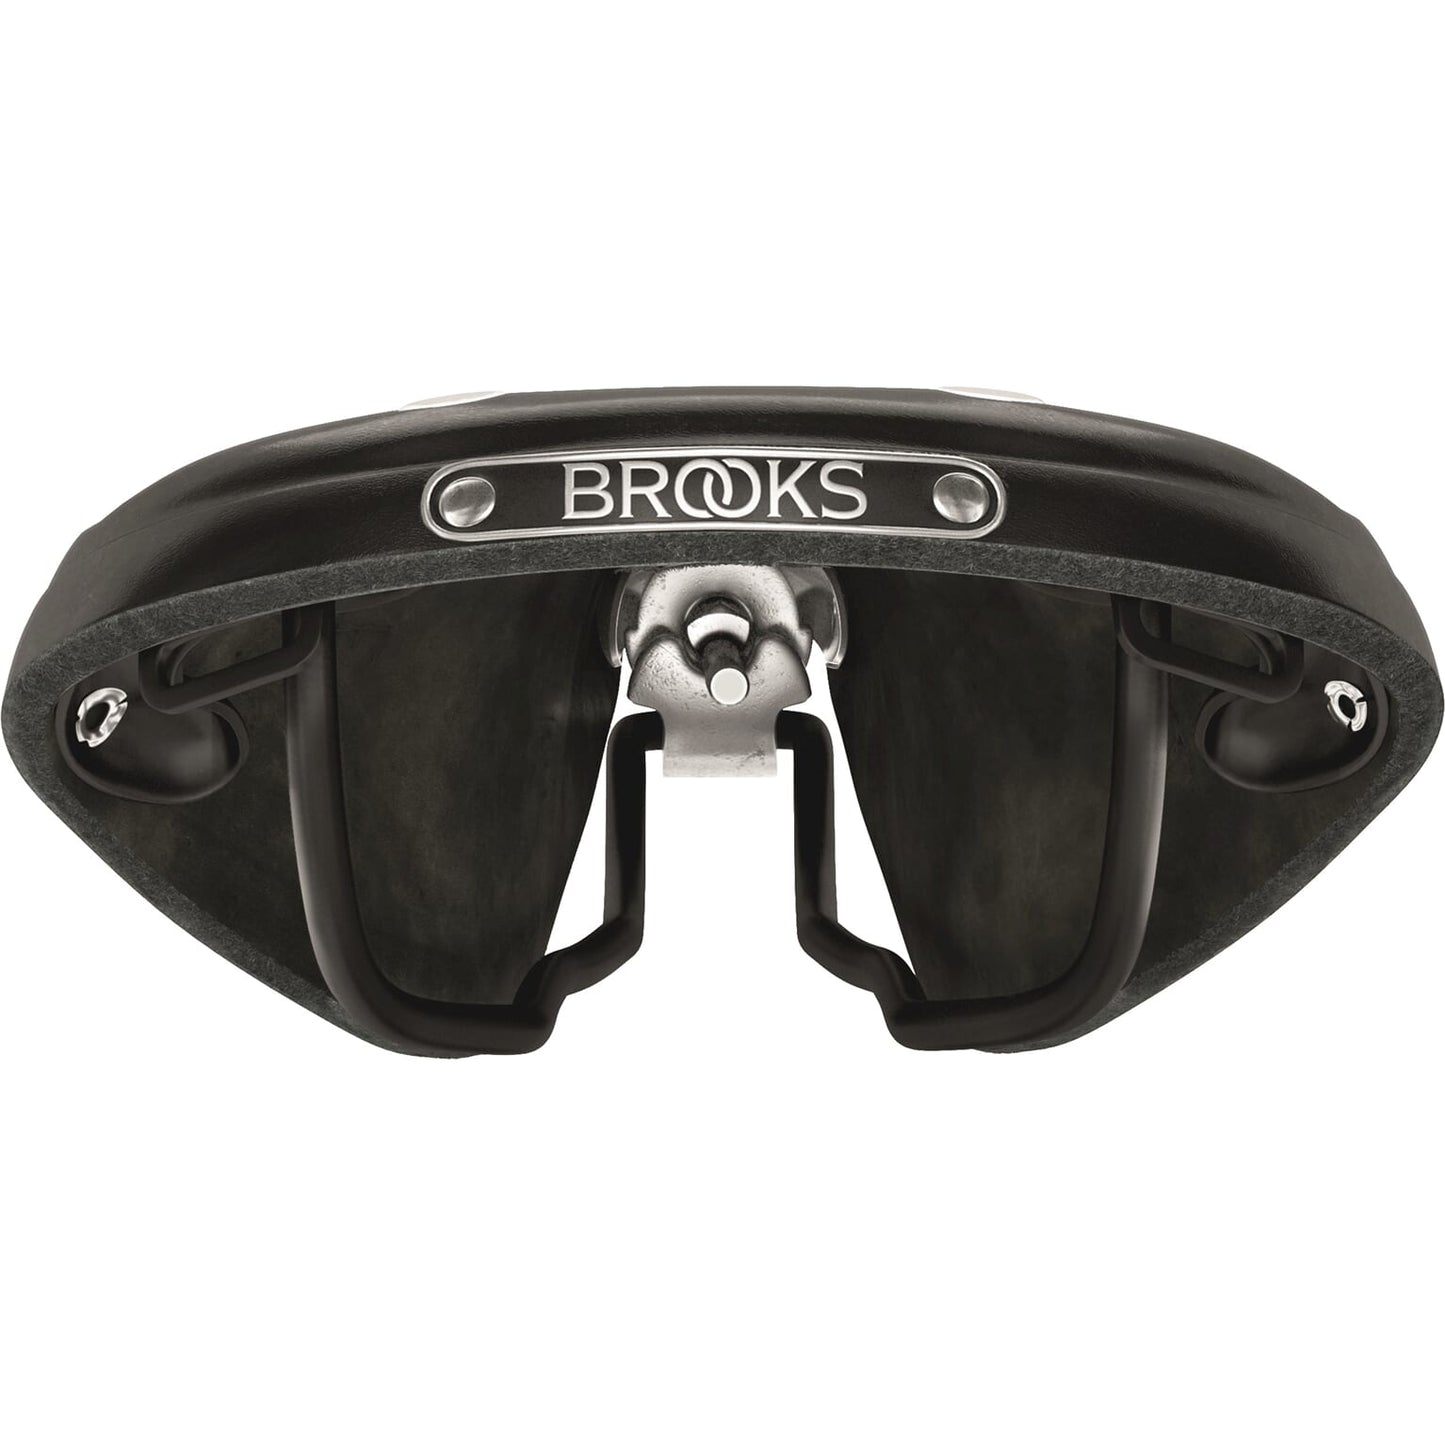 Brooks Saddle B17 estrecho negro